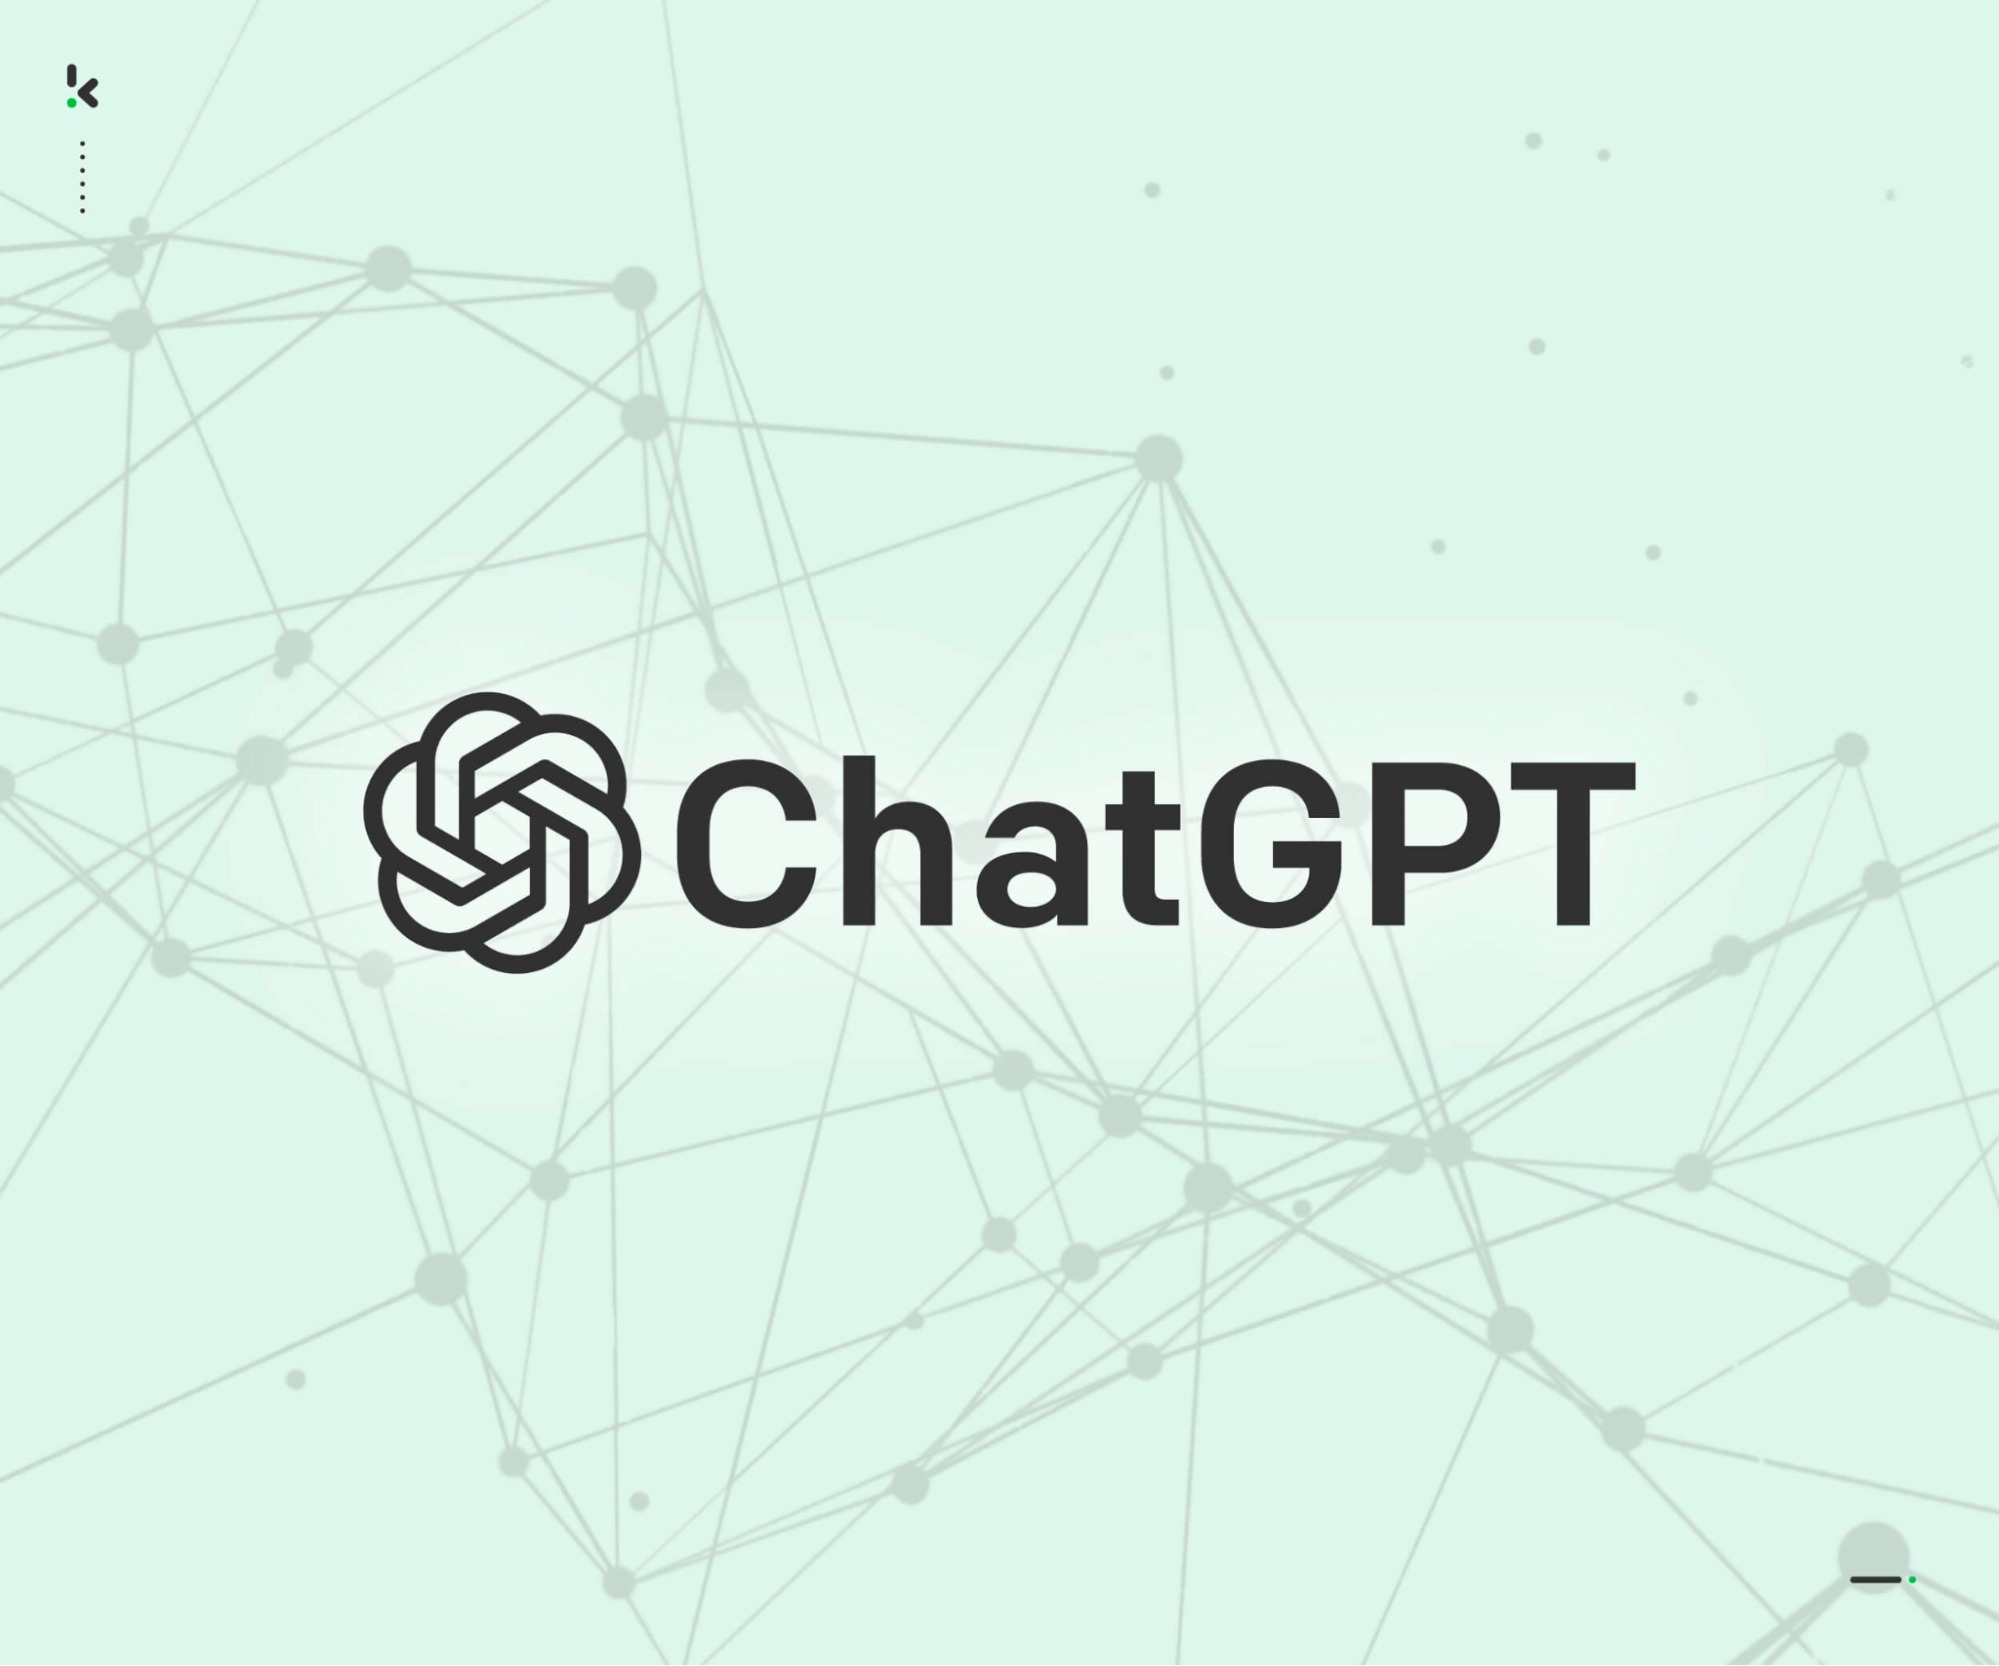 Những thông tin cơ bản về ChatGPT mà bạn nên biết